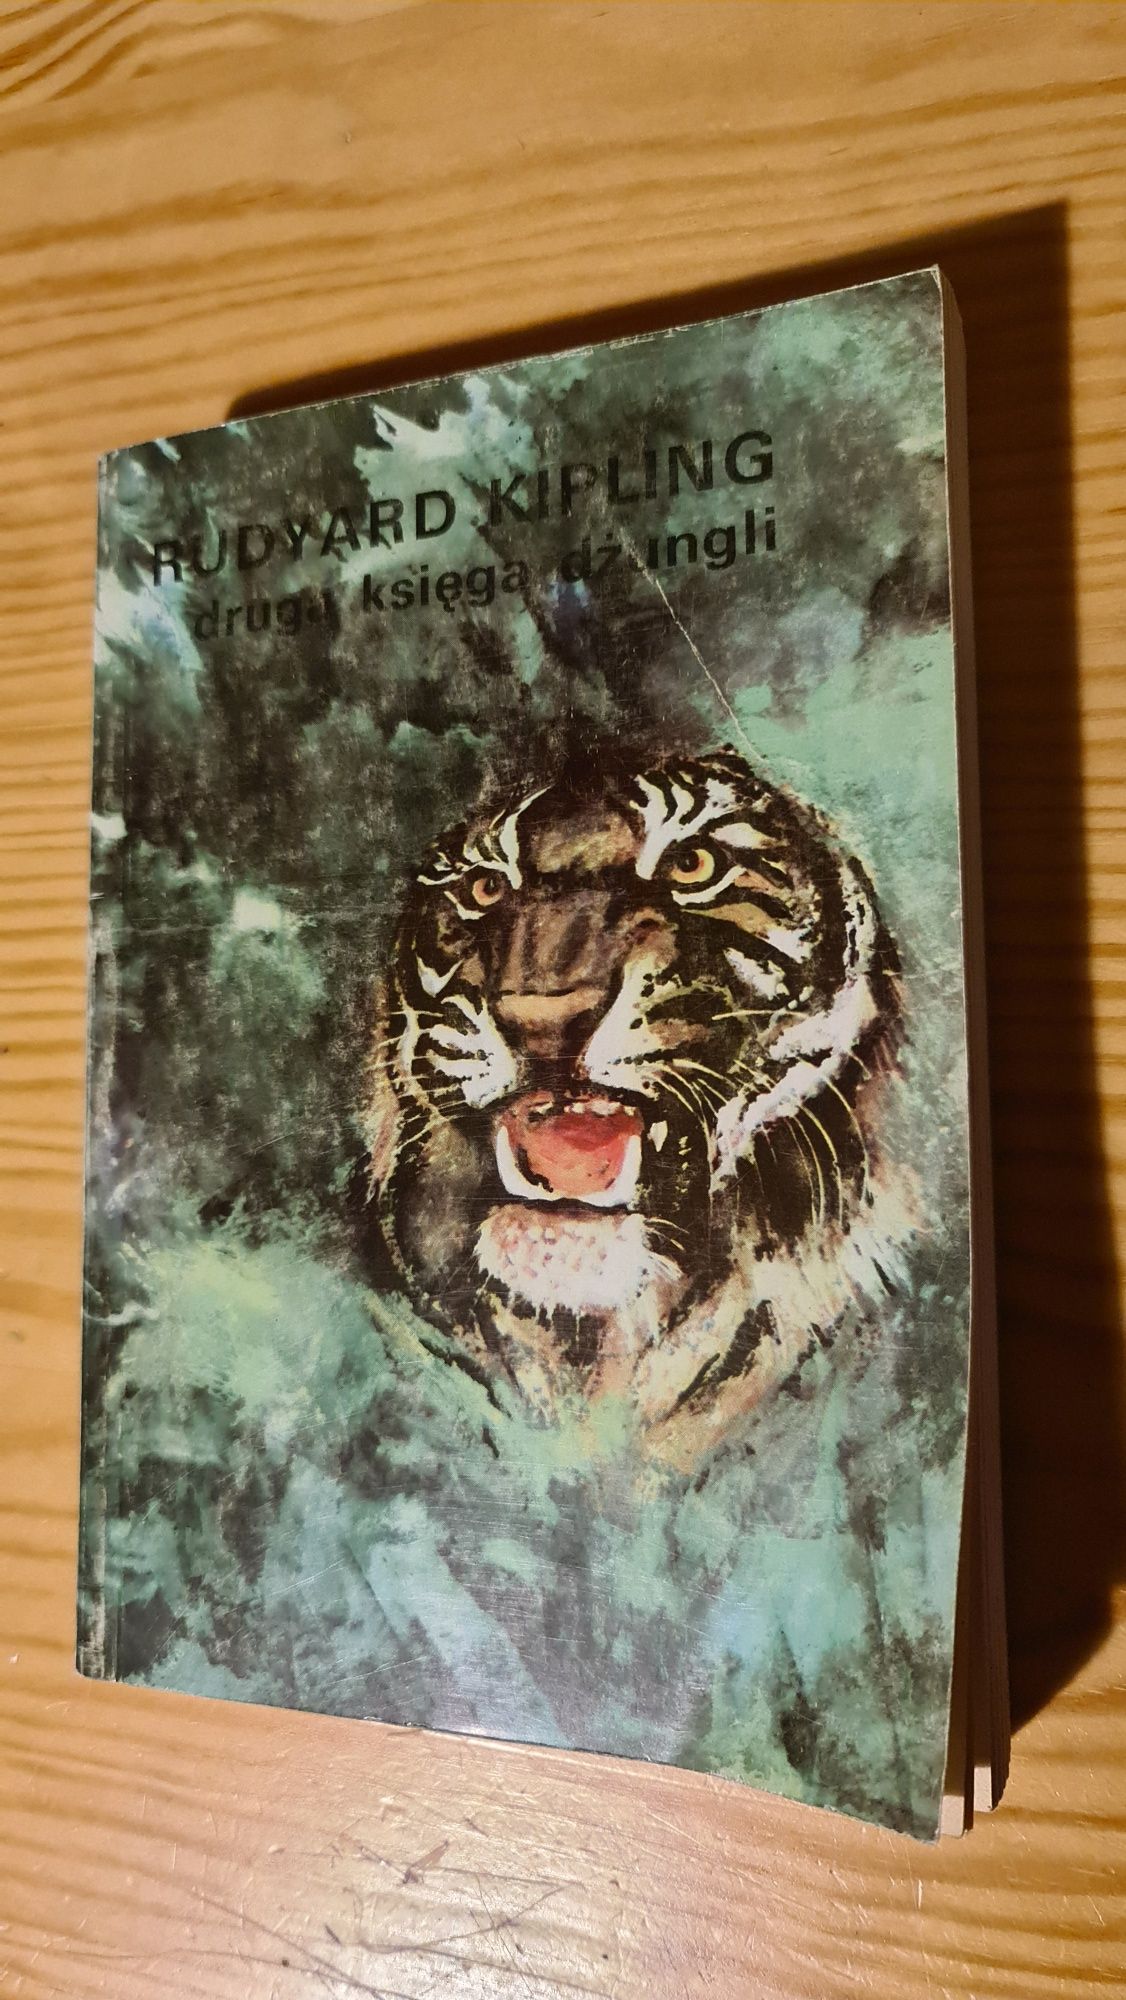 2 książki w jednym! Rudyard Kipling  księga dżungli oraz drugi księga